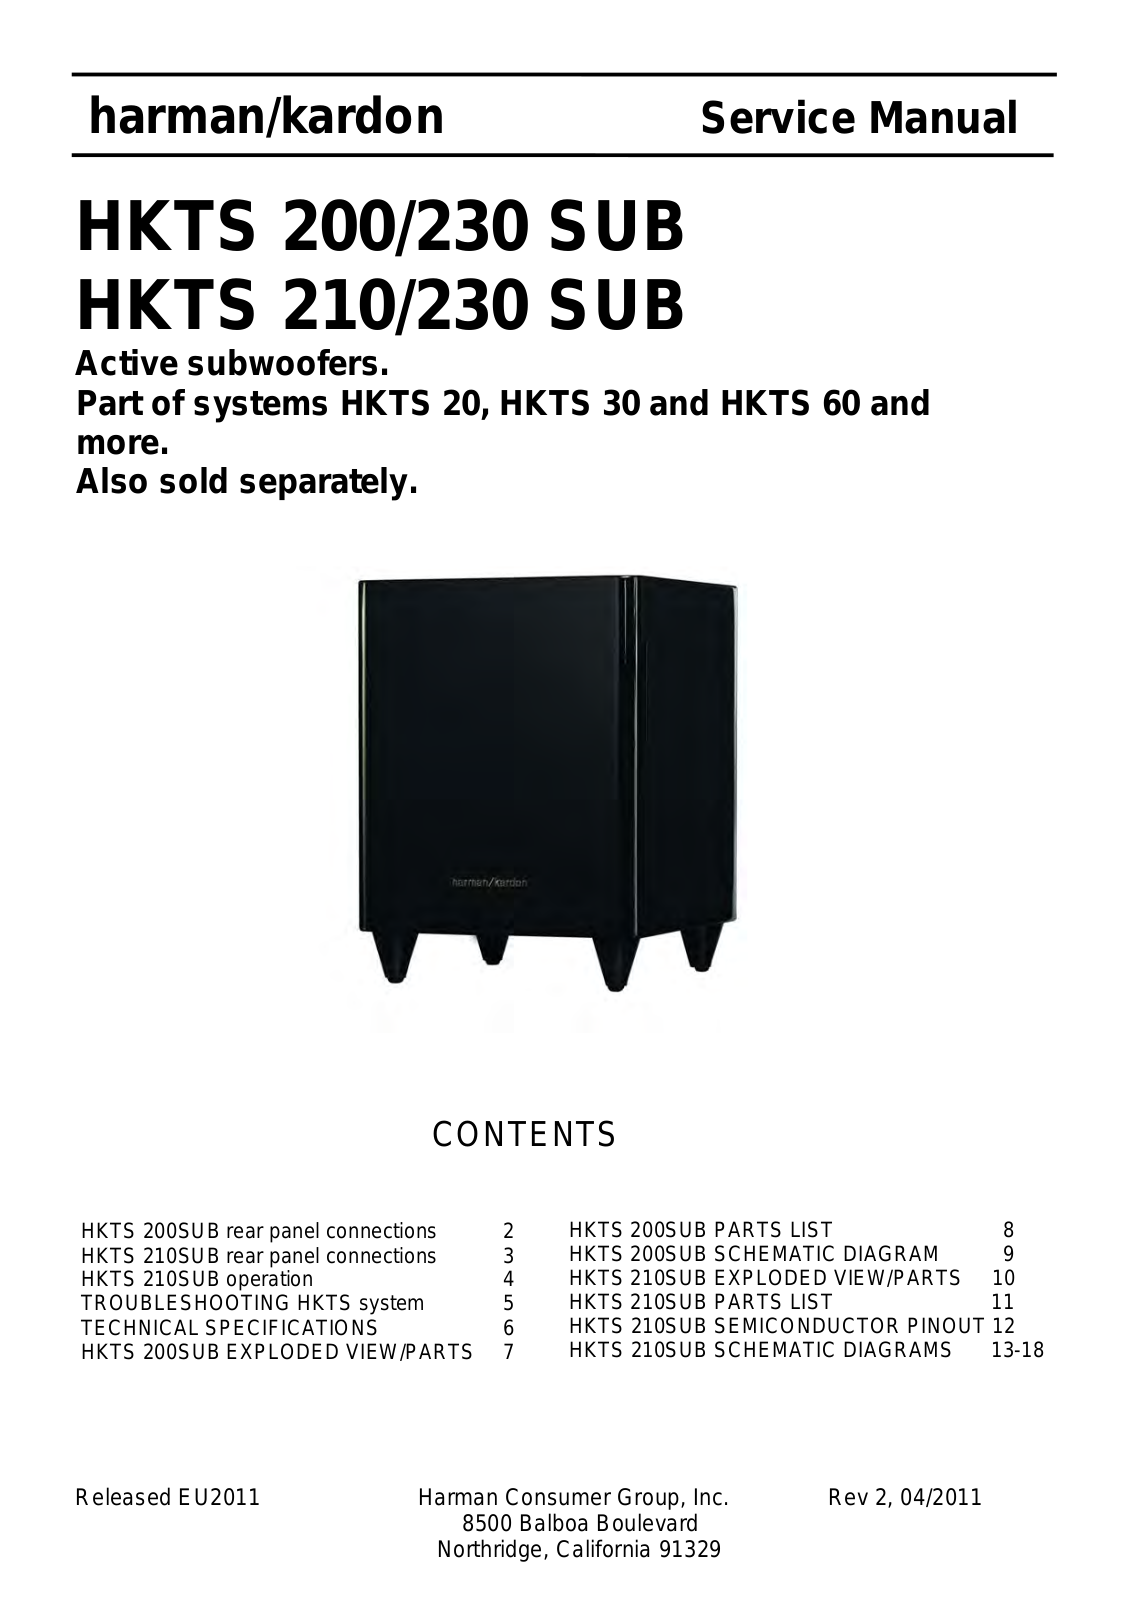 Harman Kardon HKTS 200/230 SUB, HKTS 210/230 SUB Service Manual